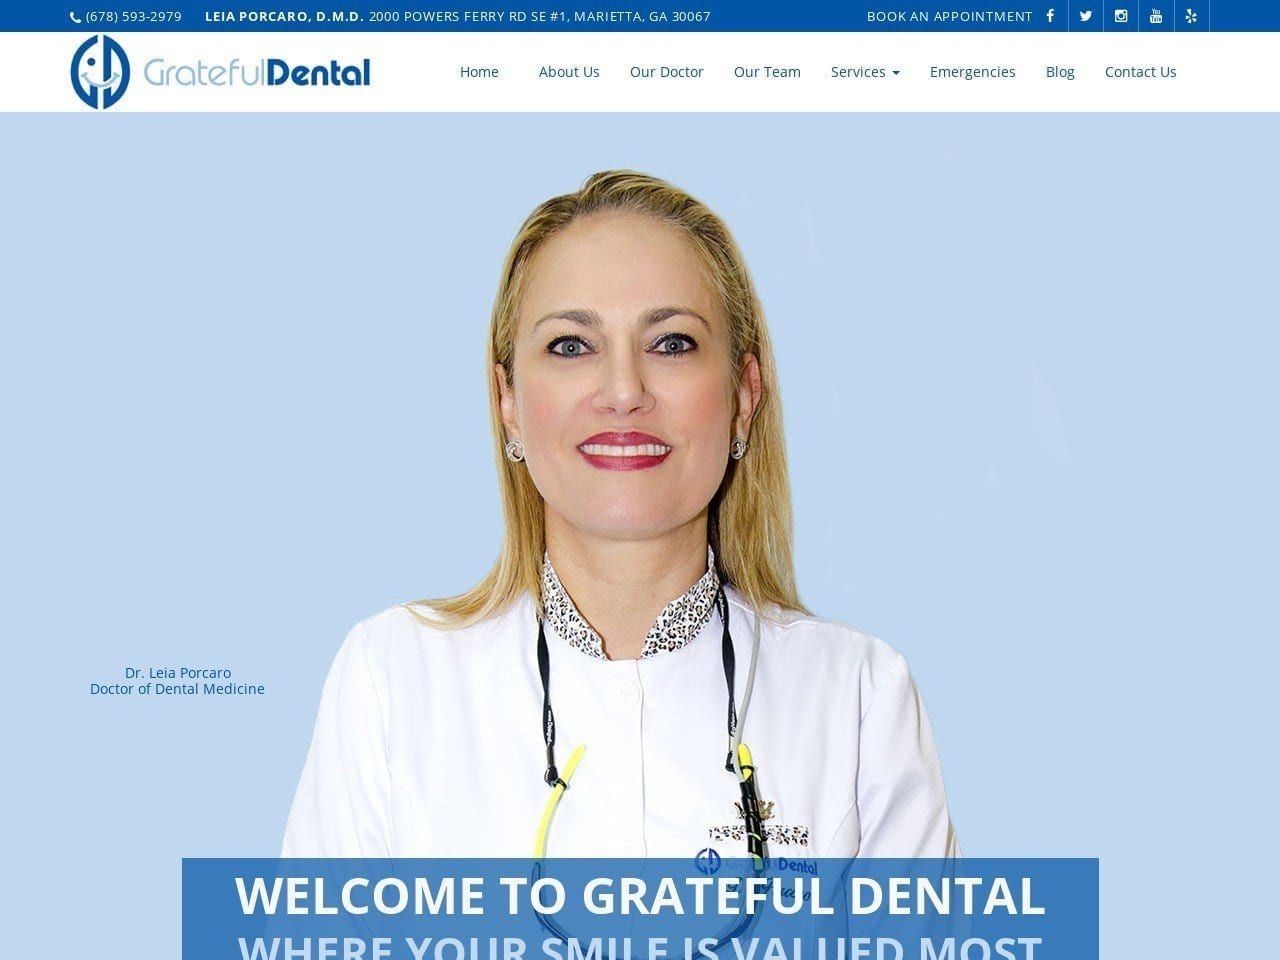 Grateful Dental Website Screenshot from gratefuldentalga.com